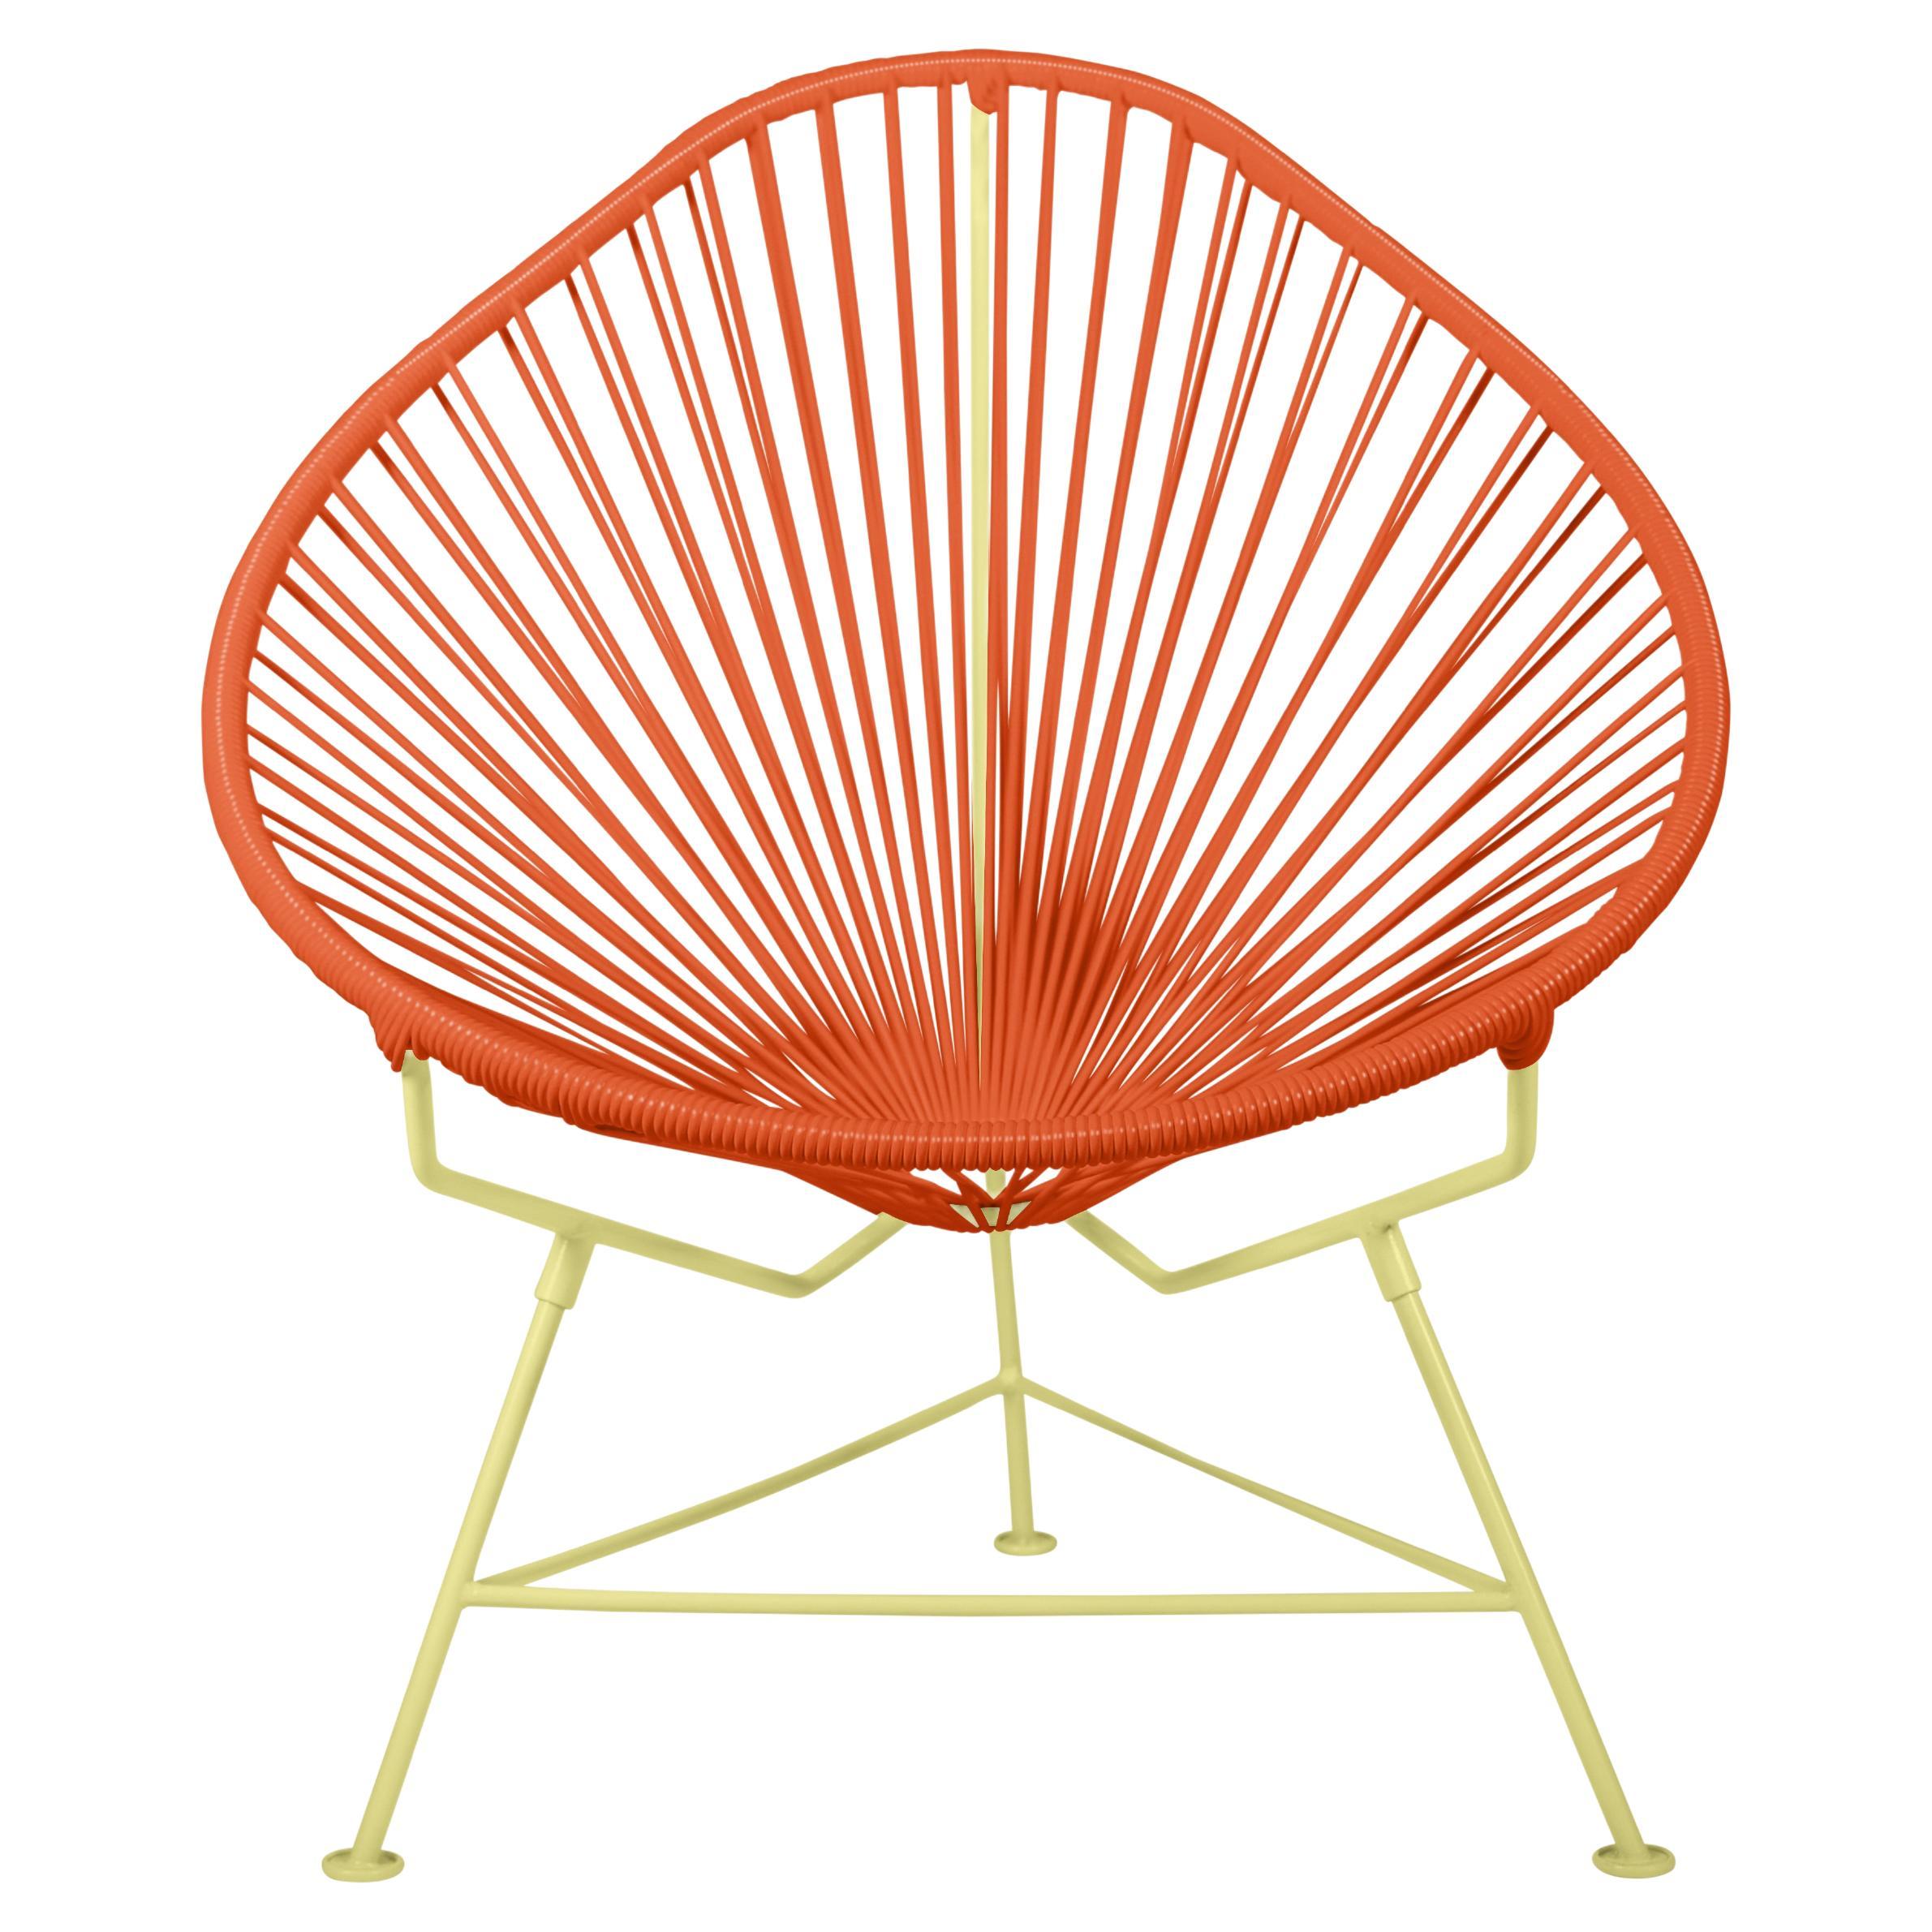 Innit Designs - Chaise Acapulco - Tissage orange sur cadre jaune